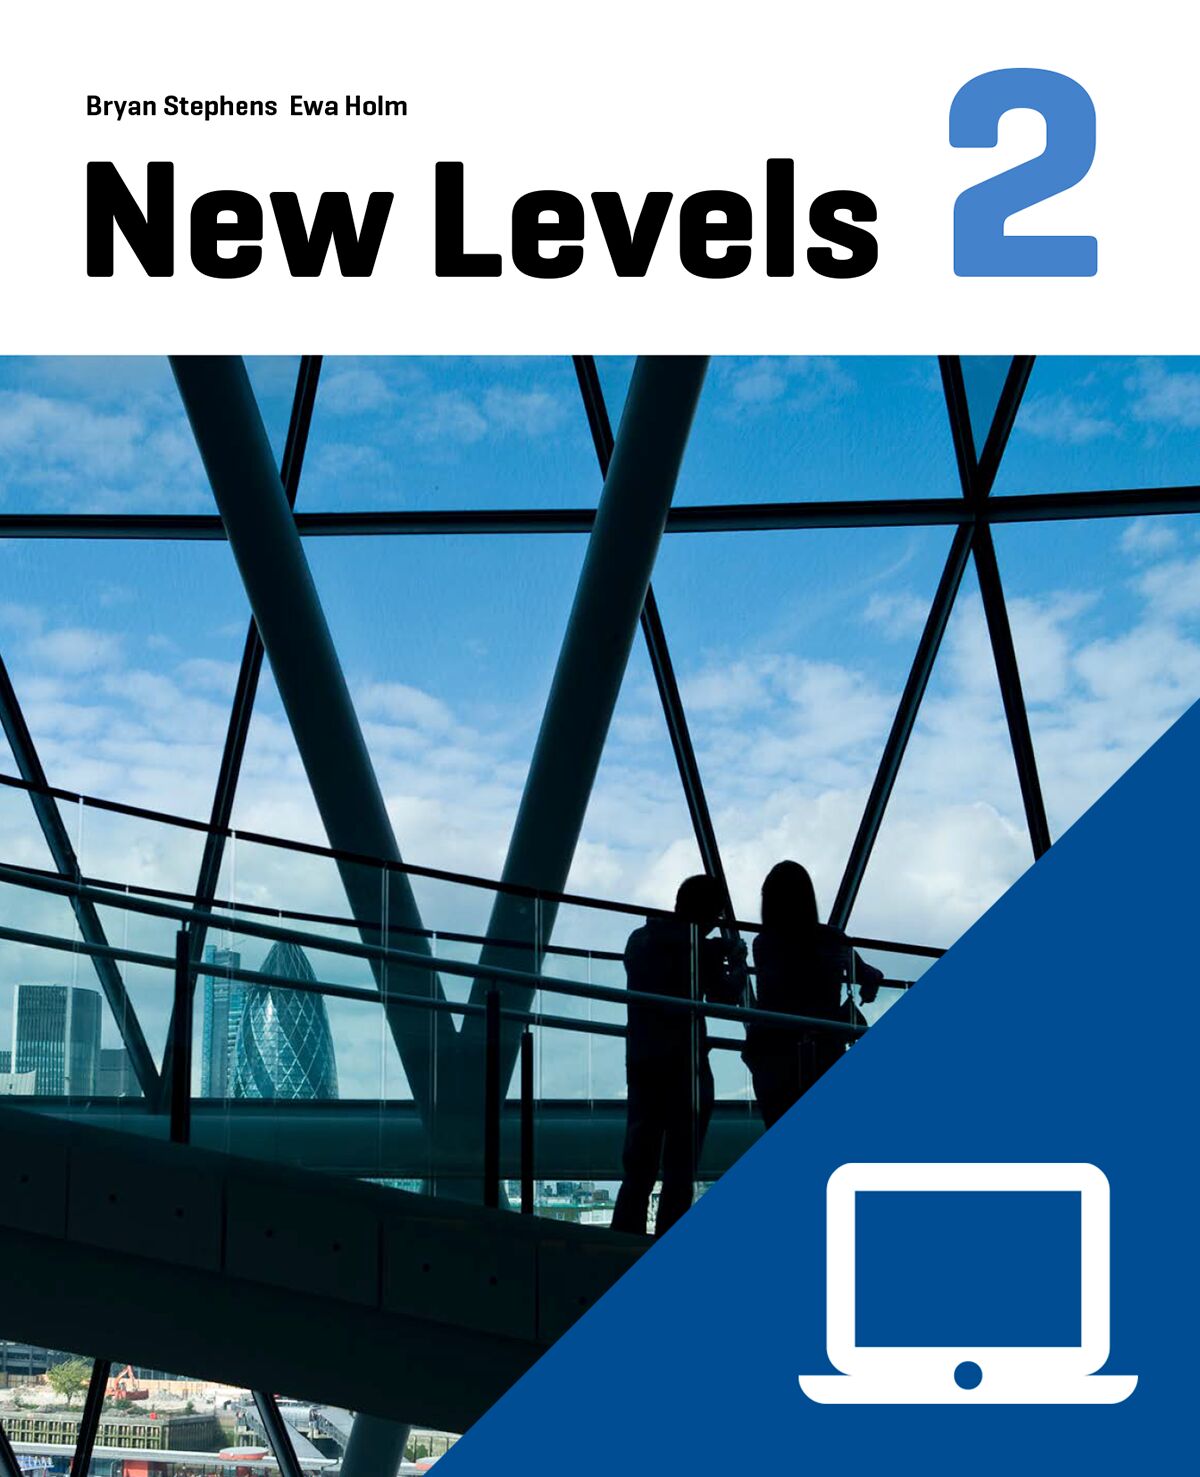 New Levels 2 Lärarwebb, individlicens 12 mån (OBS! Endast för lärare)